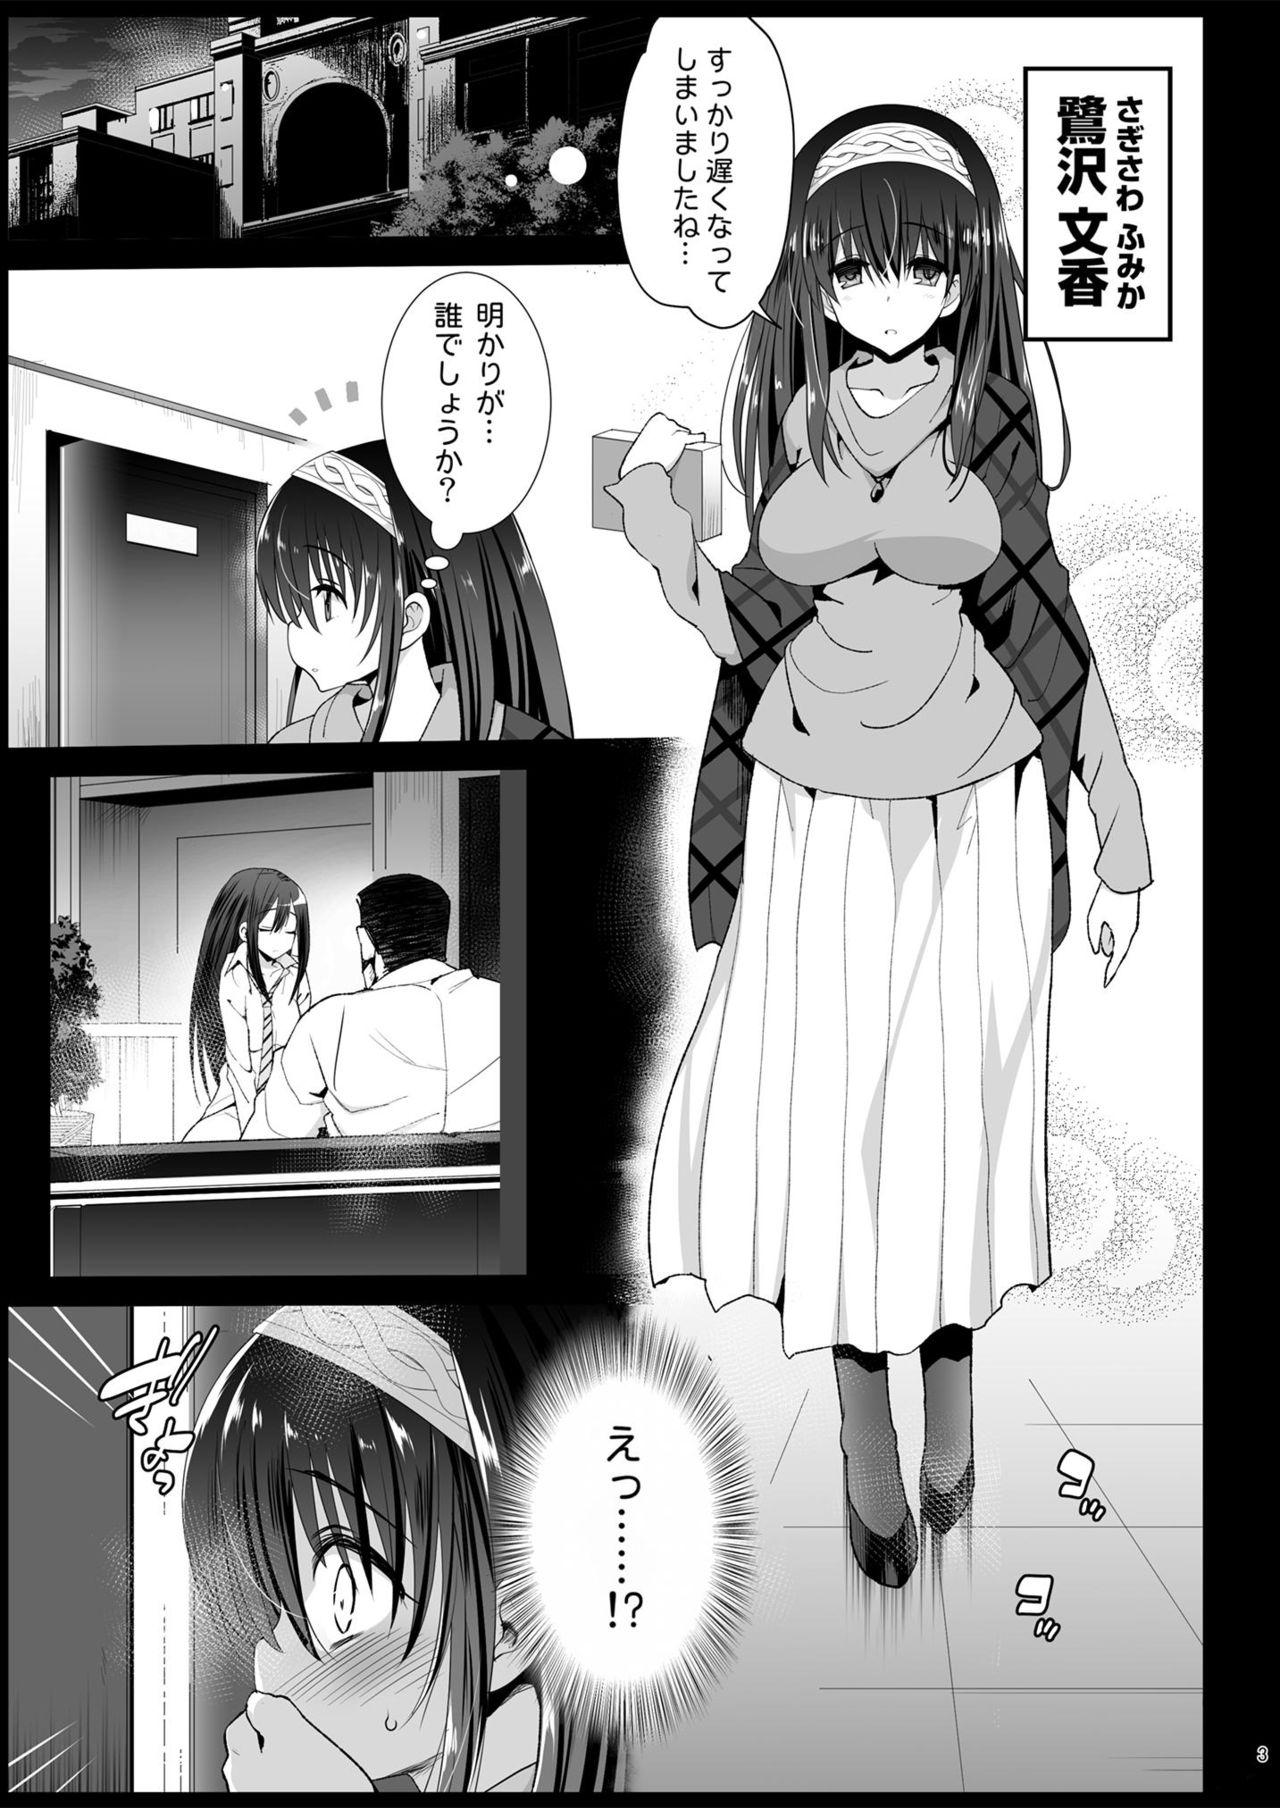 Stripping Sagisawa Fumika, Ochiru - The idolmaster Sub - Page 4